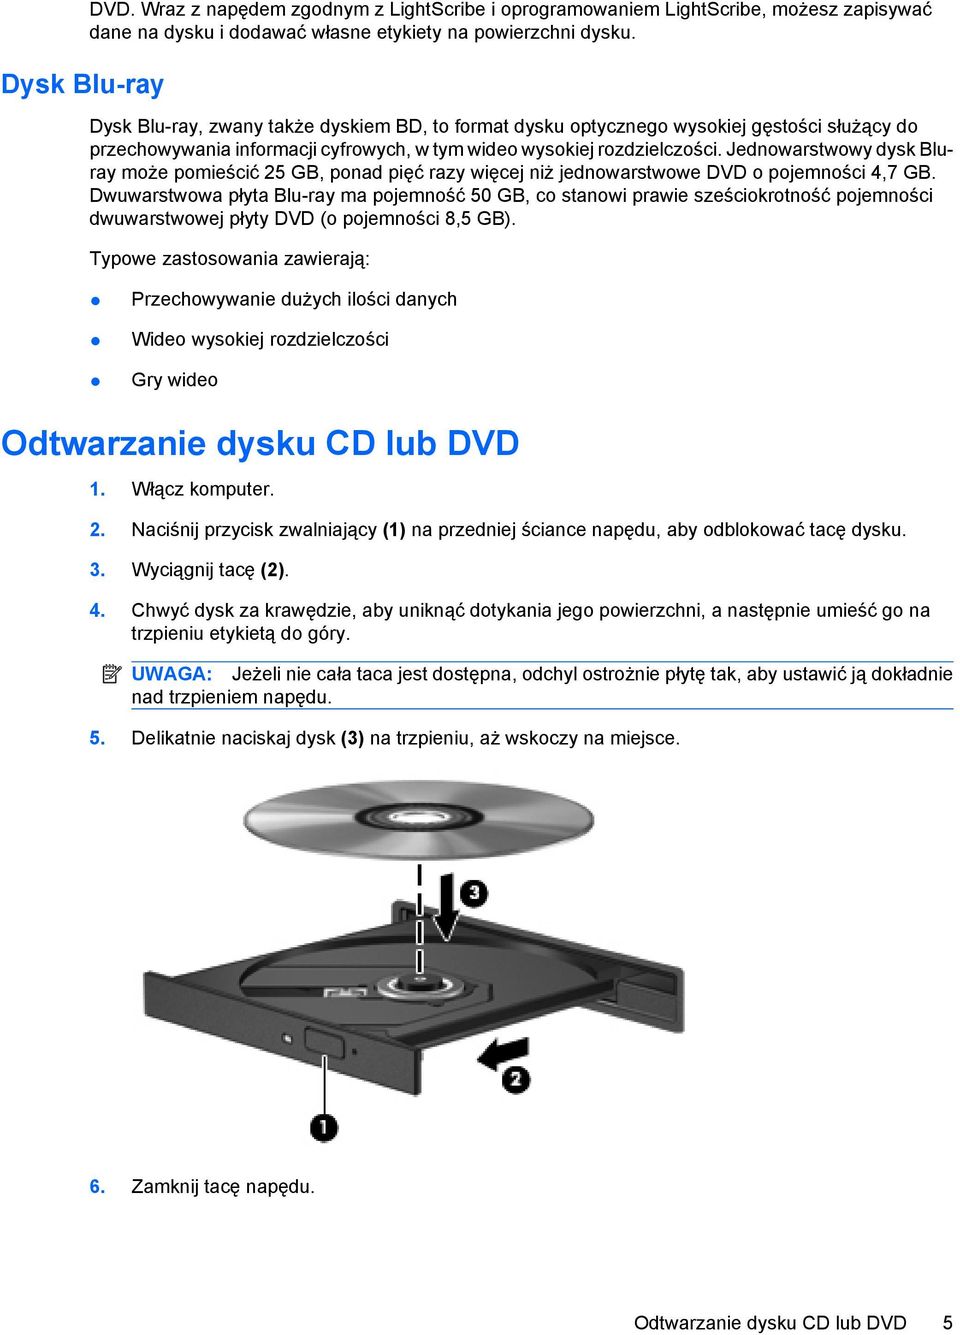 Jednowarstwowy dysk Bluray może pomieścić 25 GB, ponad pięć razy więcej niż jednowarstwowe DVD o pojemności 4,7 GB.